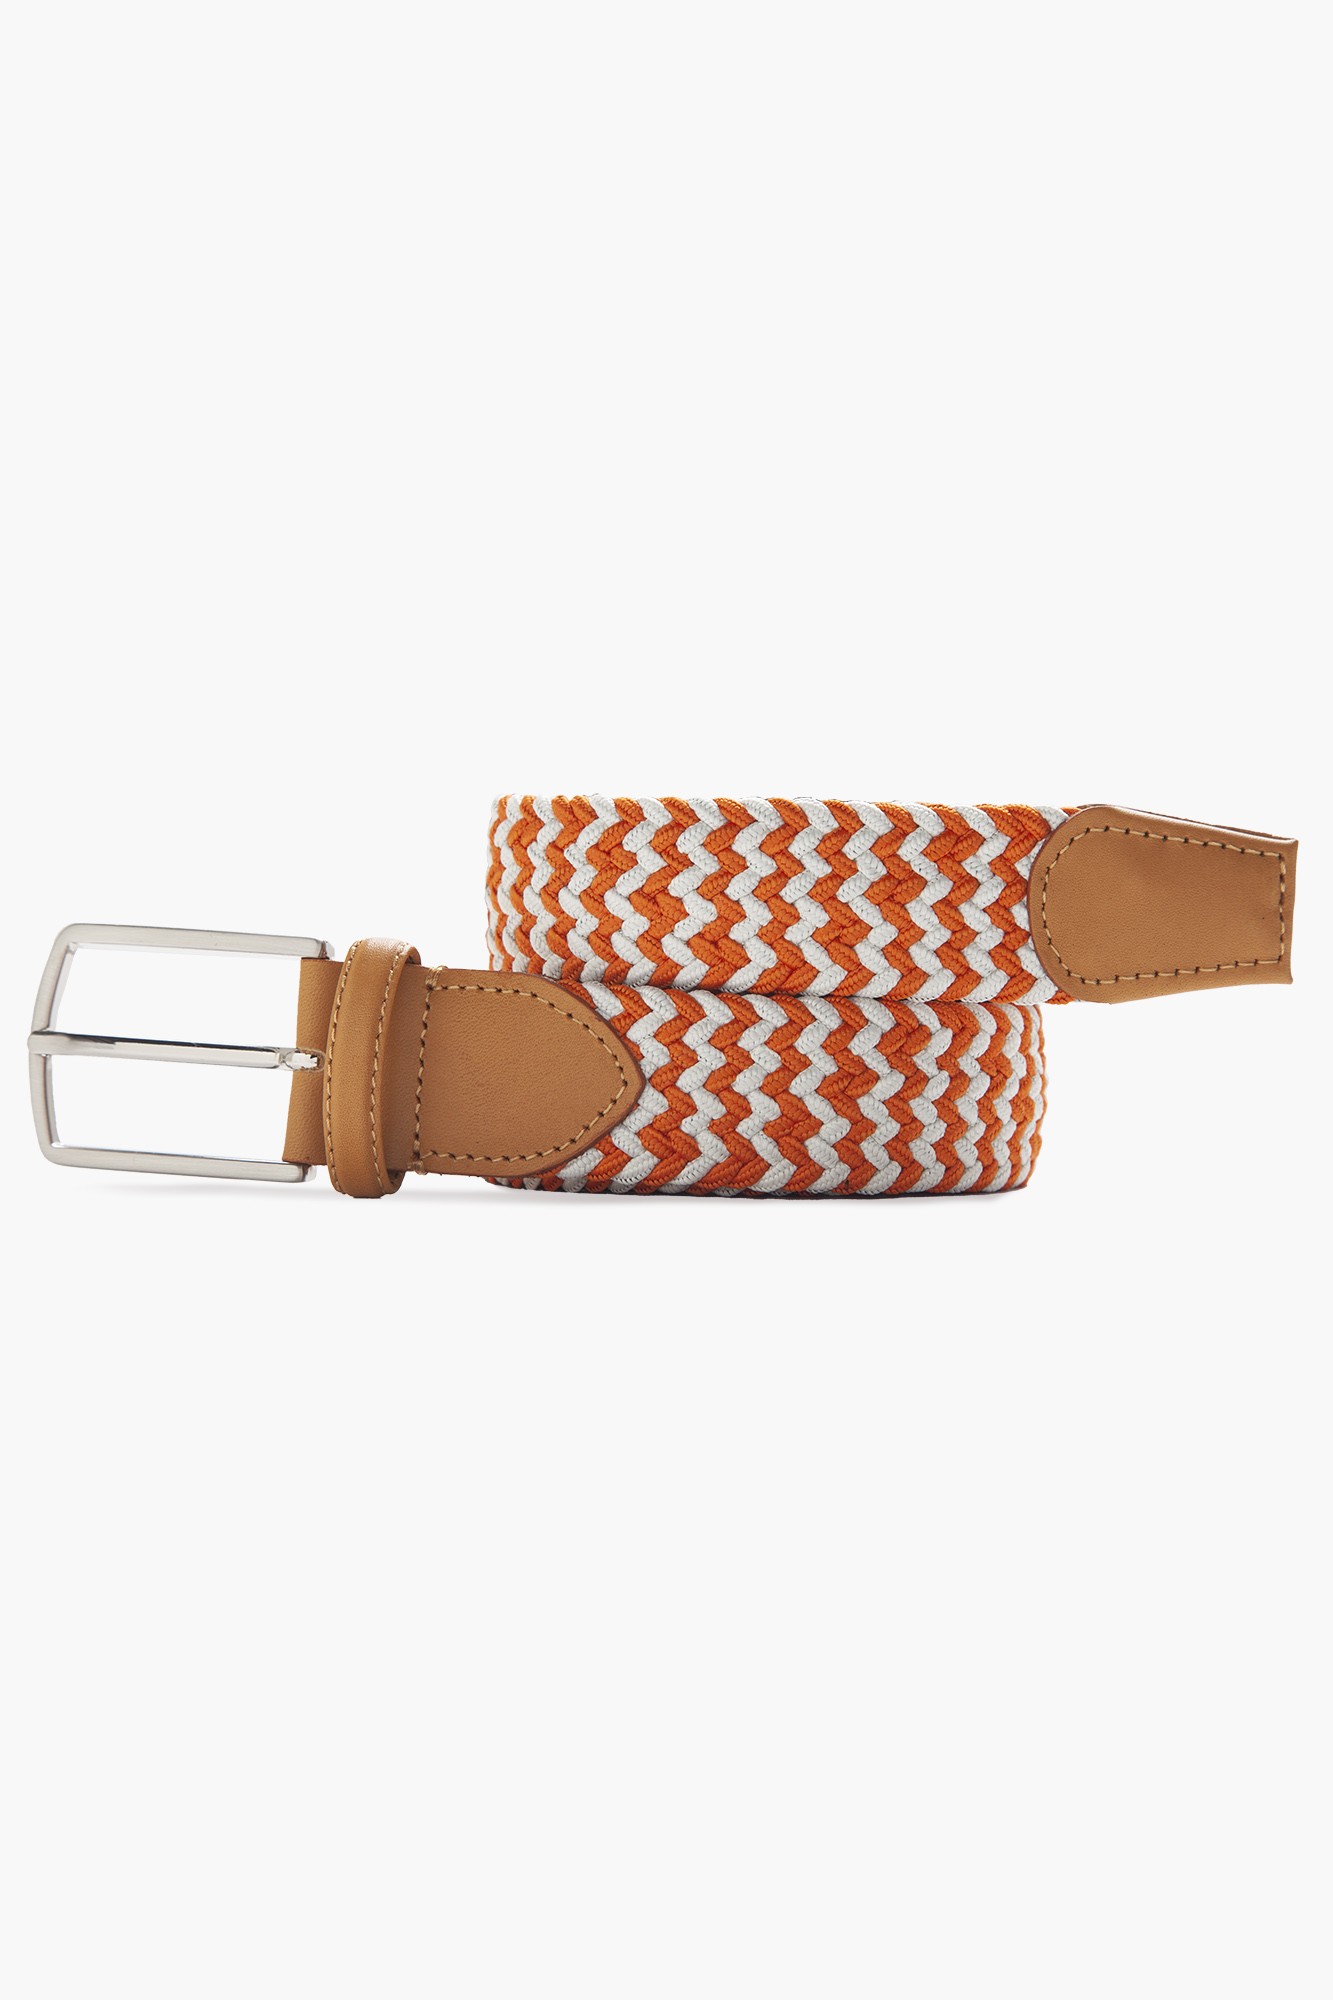 Elastic Knit Belt with Genuine Leather - Orange White